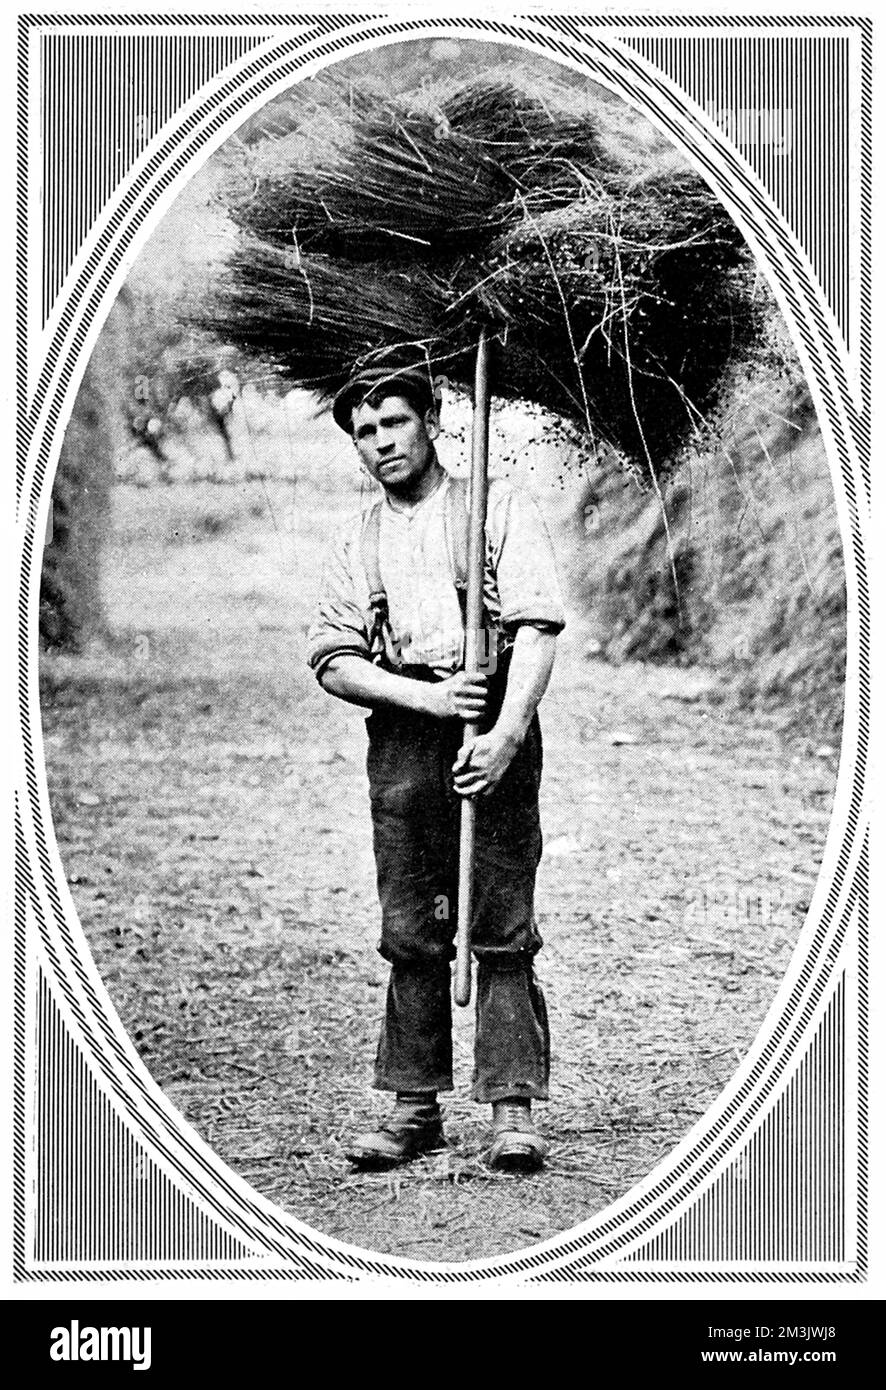 Photographie d'un montage présenté dans la sphère en 1913 montrant divers portraits caractéristiques des travailleurs agricoles. Jeune homme portant un boisseau de foin sur sa fourche, portant une casquette plate, des manches à mirrtSleeves et un pantalon avec des bretelles (ou des « expéditeurs »). Date: 1913 Banque D'Images